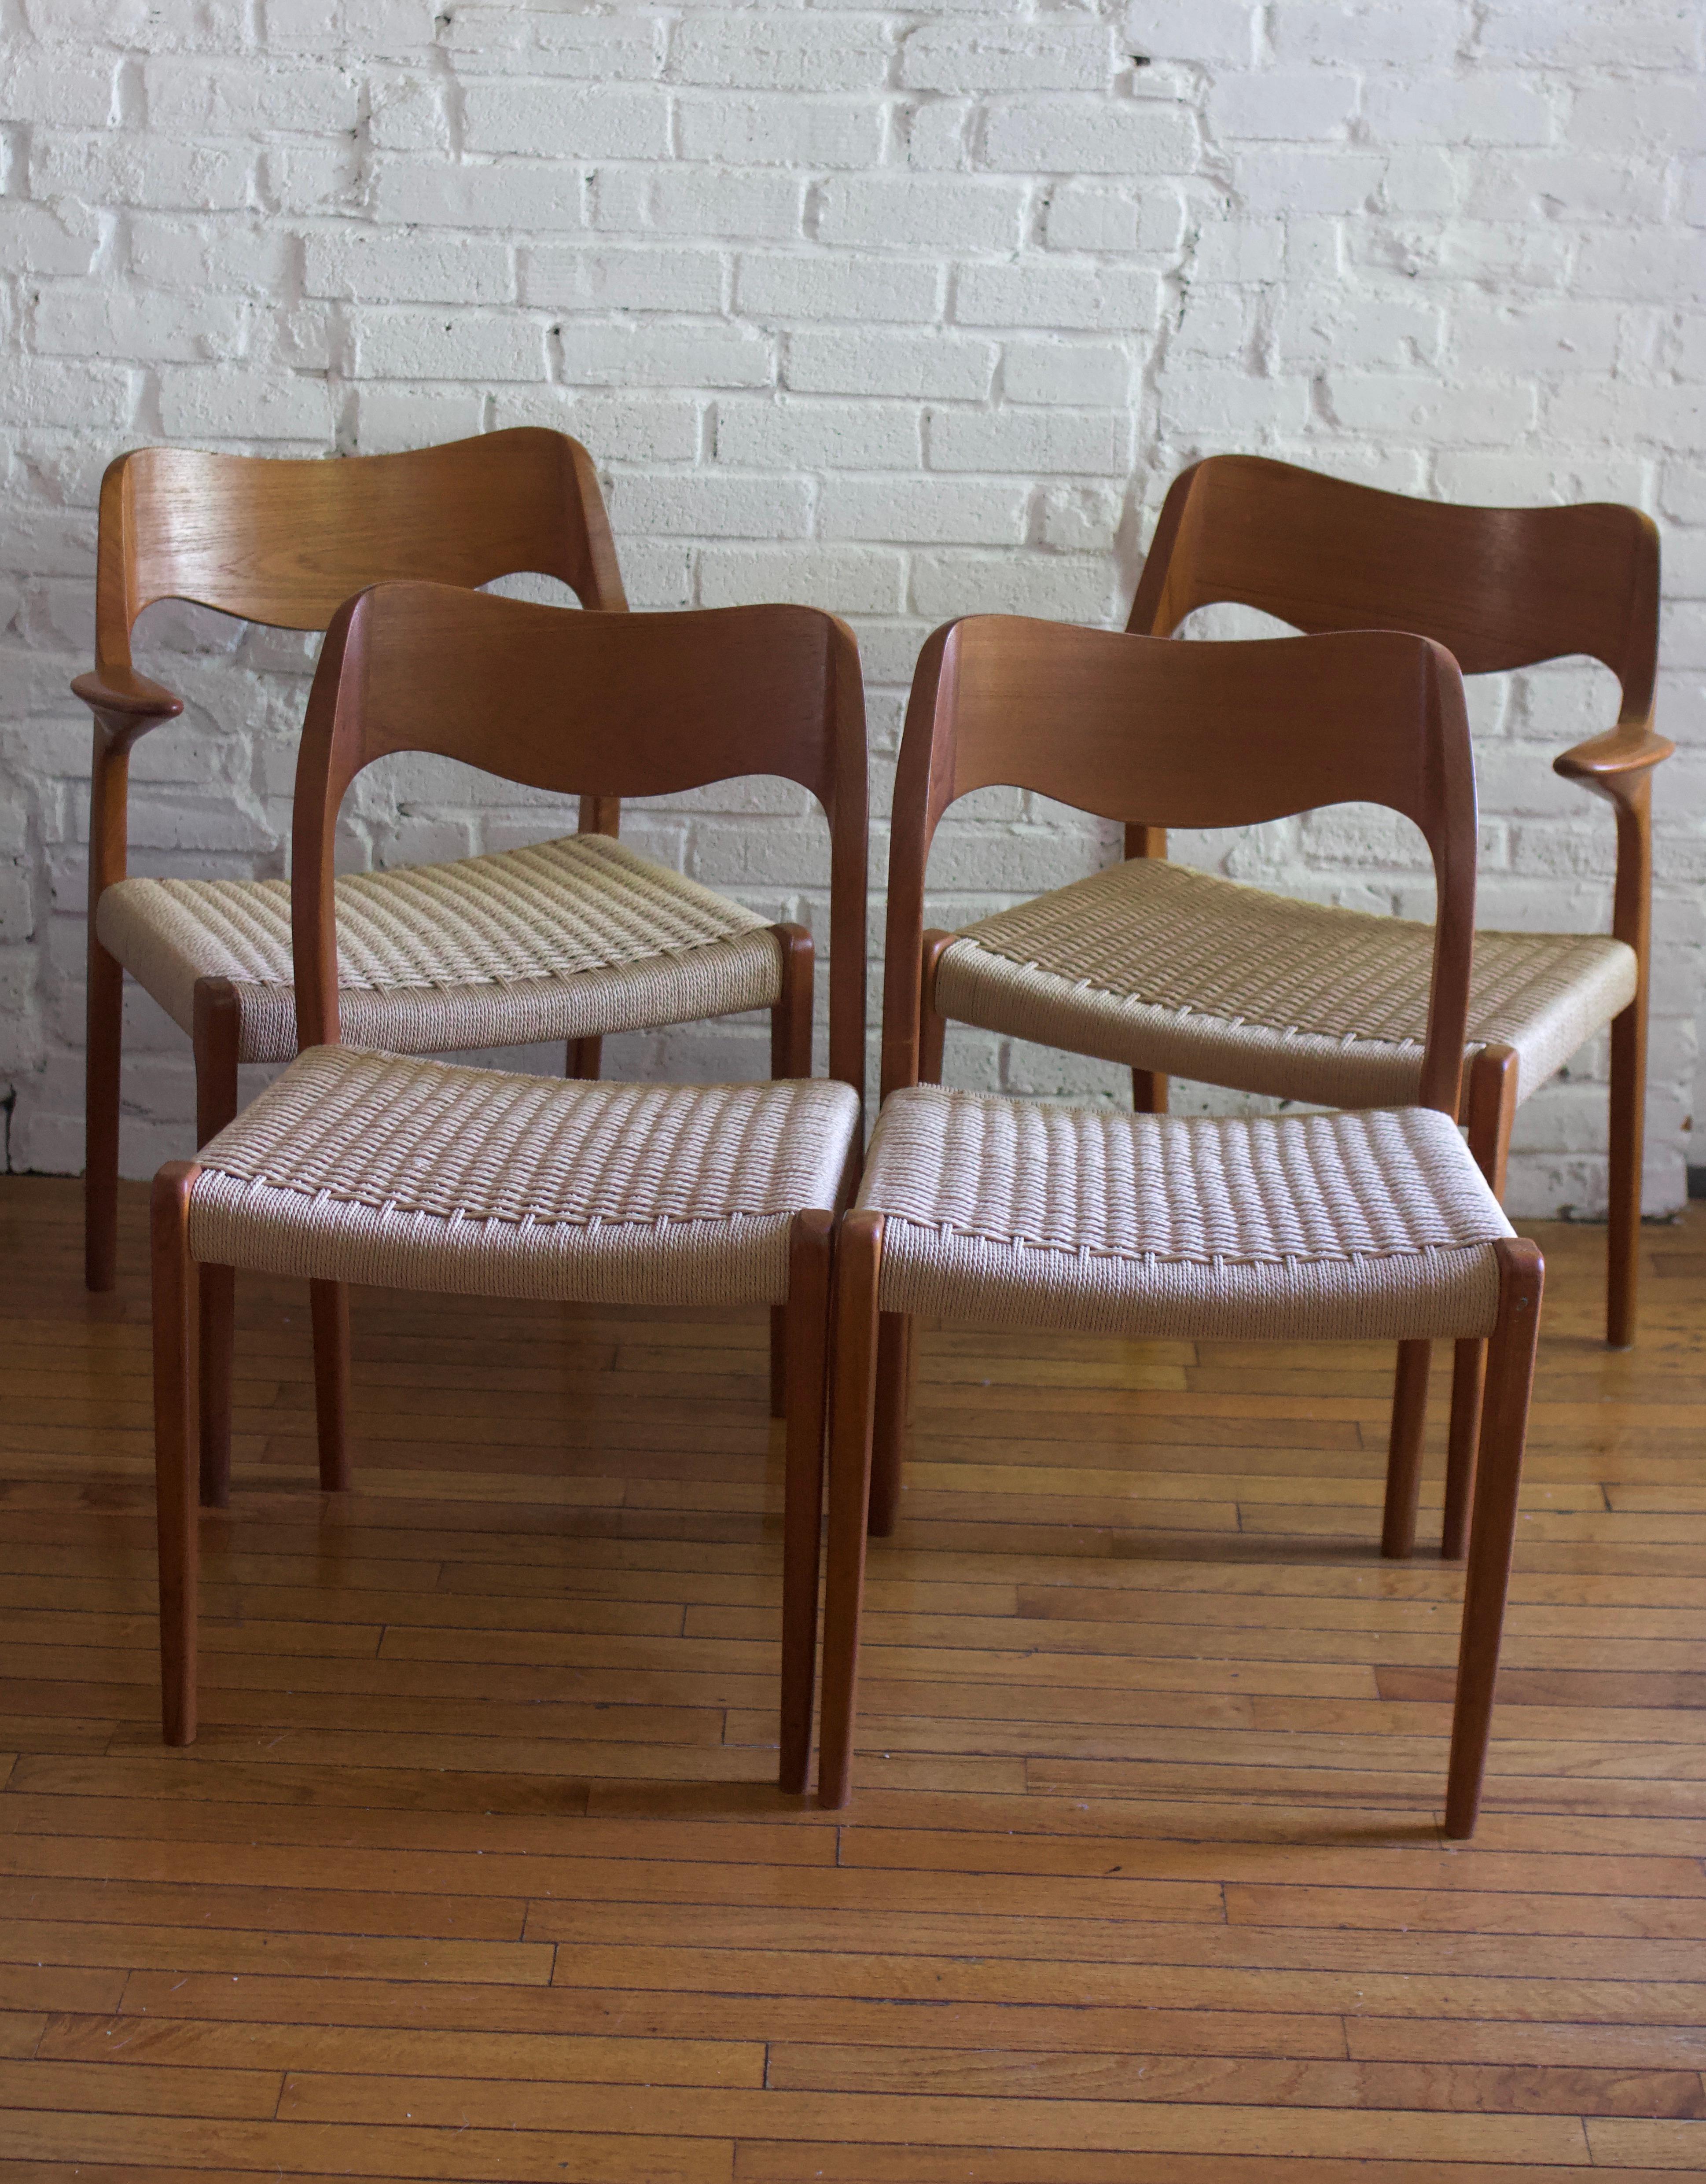 Fantastique paire de chaises Niels O. Møller modèle 71. Structure sculpturale en bois dur de teck et sièges en corde danoise. Le nouveau cordon danois vient d'être achevé. 

Fabriqué au Danemark et conçu en 1951 par le célèbre designer danois du XXe